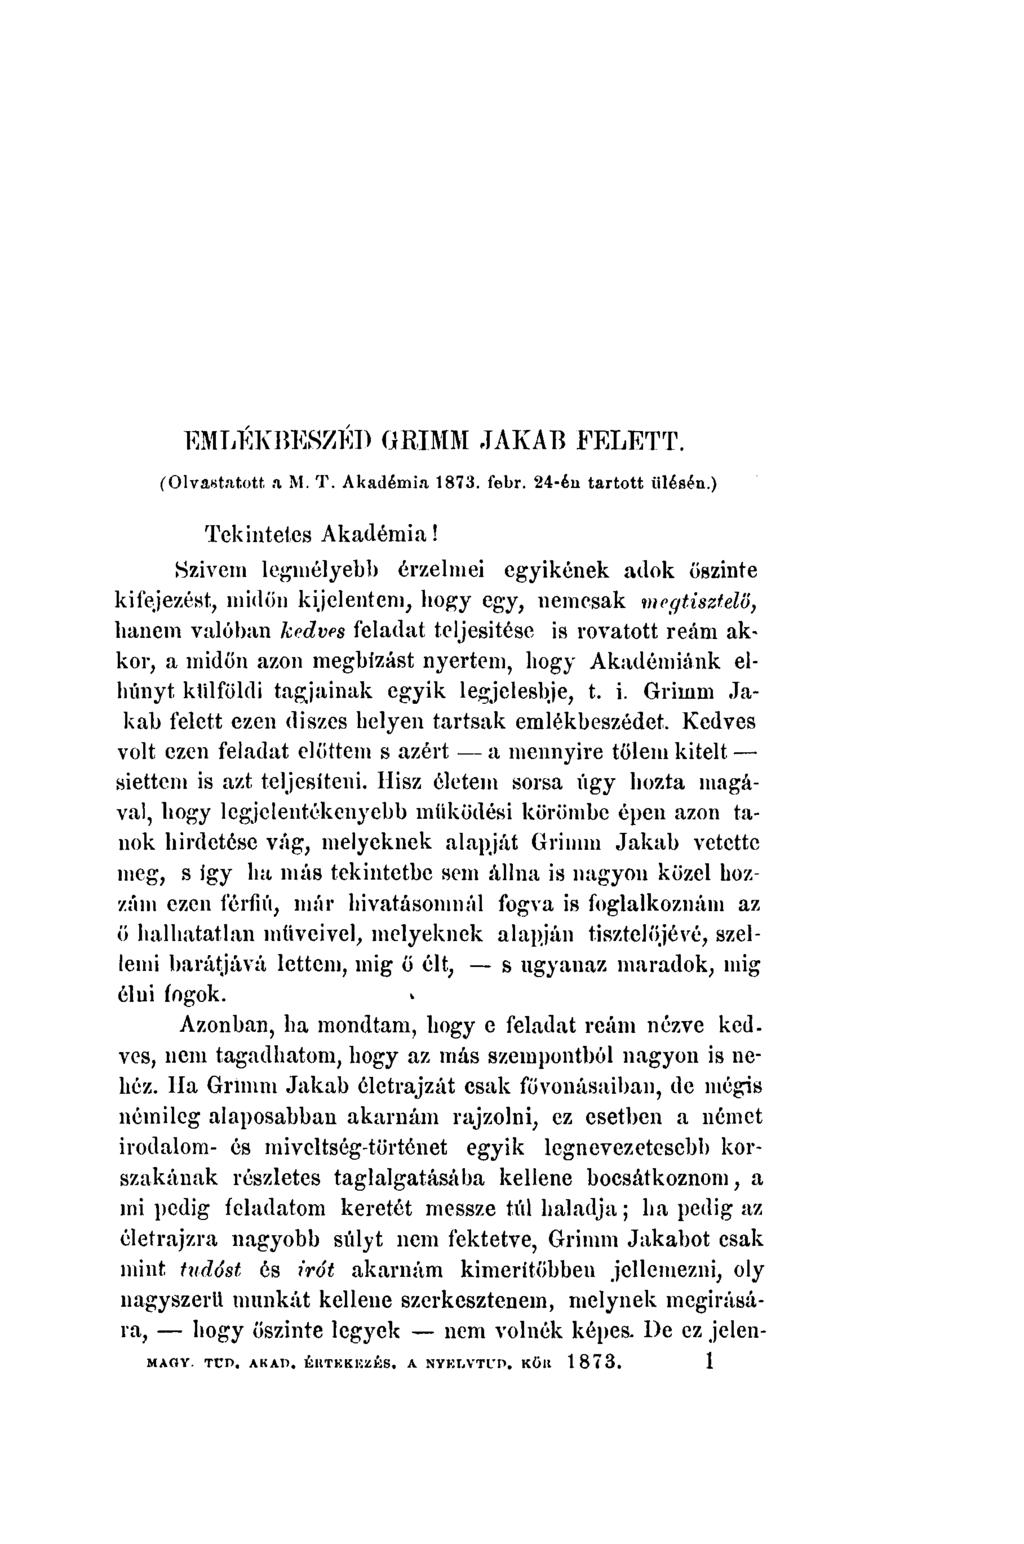 EMLÉKBESZÉD GRIMM JAKAB FELETT. ('Olvastatott a M. T. Akadémia 1873. febr. 24-én tartott ülésén.) Tekintetes Akadémia!